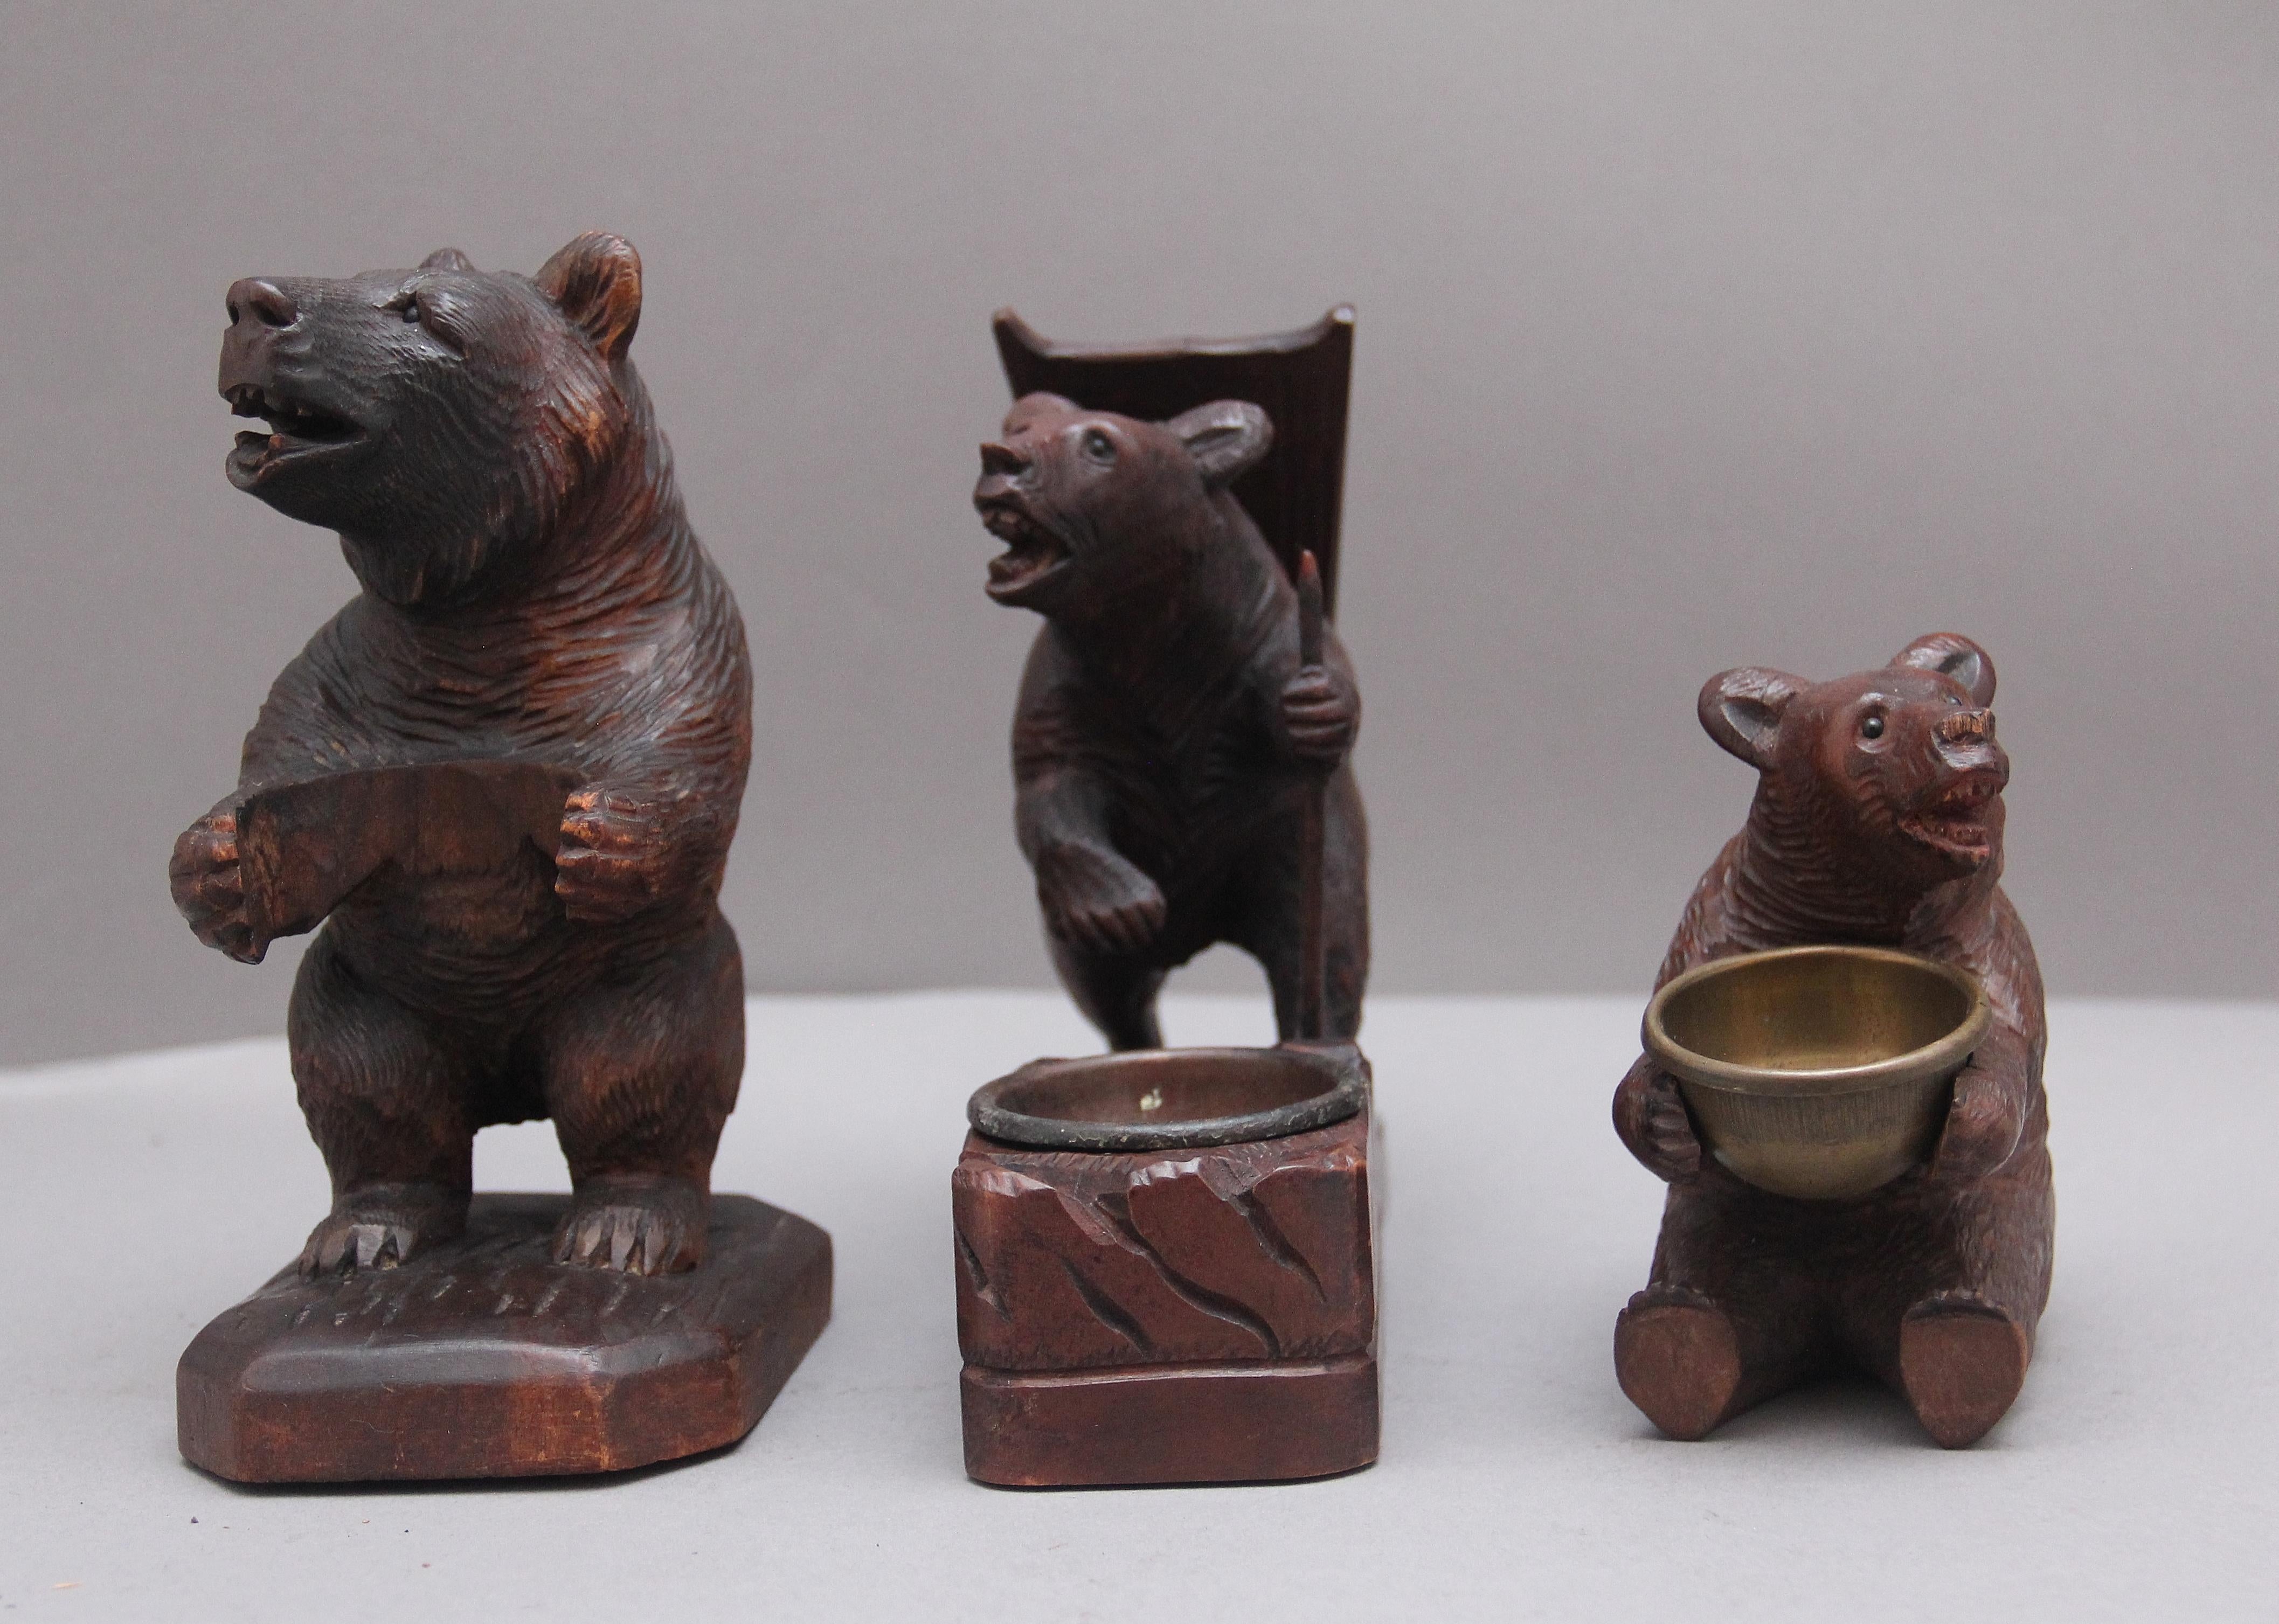 Ensemble de trois sculptures en forêt noire du XIXe siècle représentant des ours dans différentes poses. Les trois ours sont en très bon état et leur sculpture est d'une grande netteté.
 